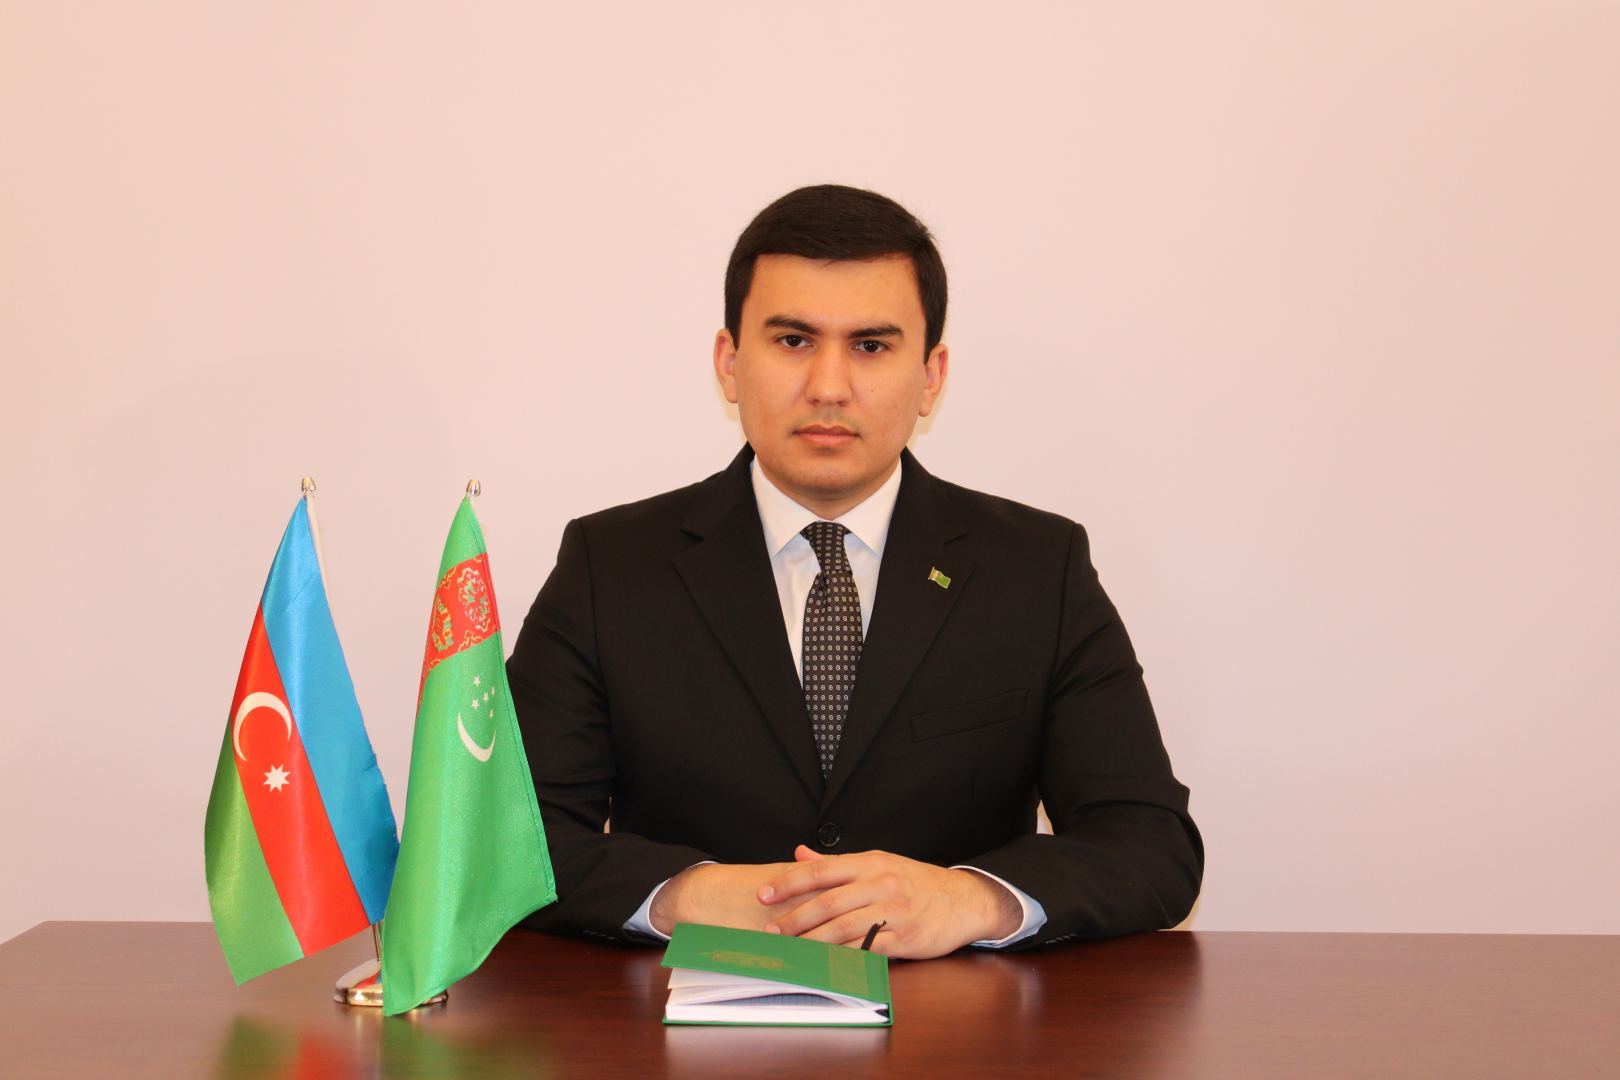 В этом году туркменский народ отмечает 30-ю годовщину независимости Туркменистана